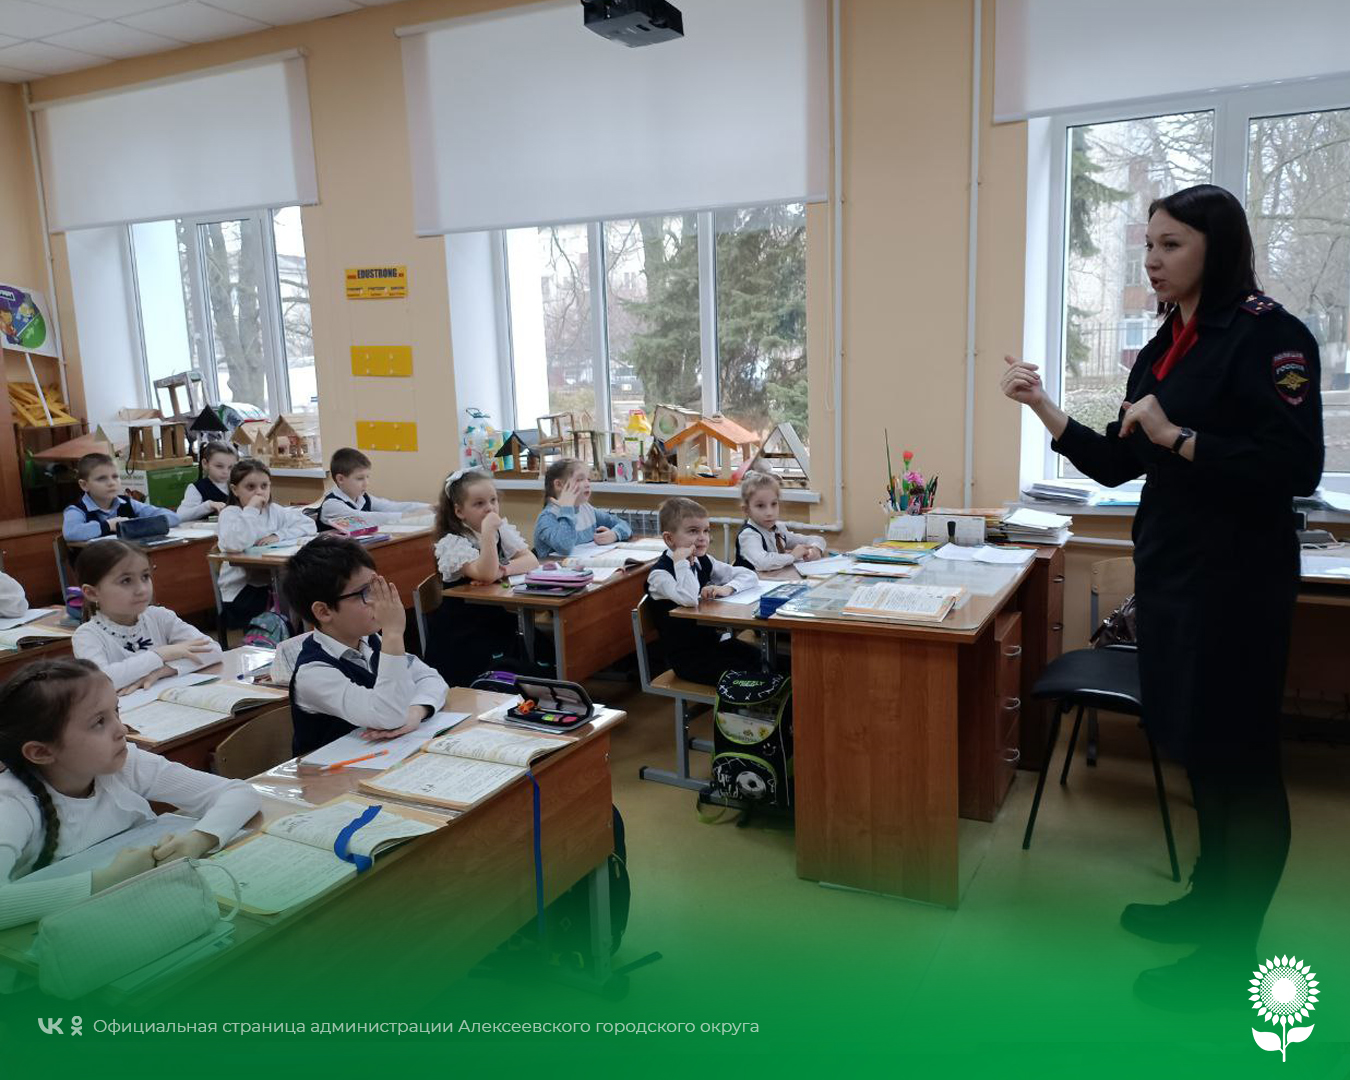 Сотрудники ОМВД России по Алексеевскому городскому округу провели профилактические беседы в школах округа